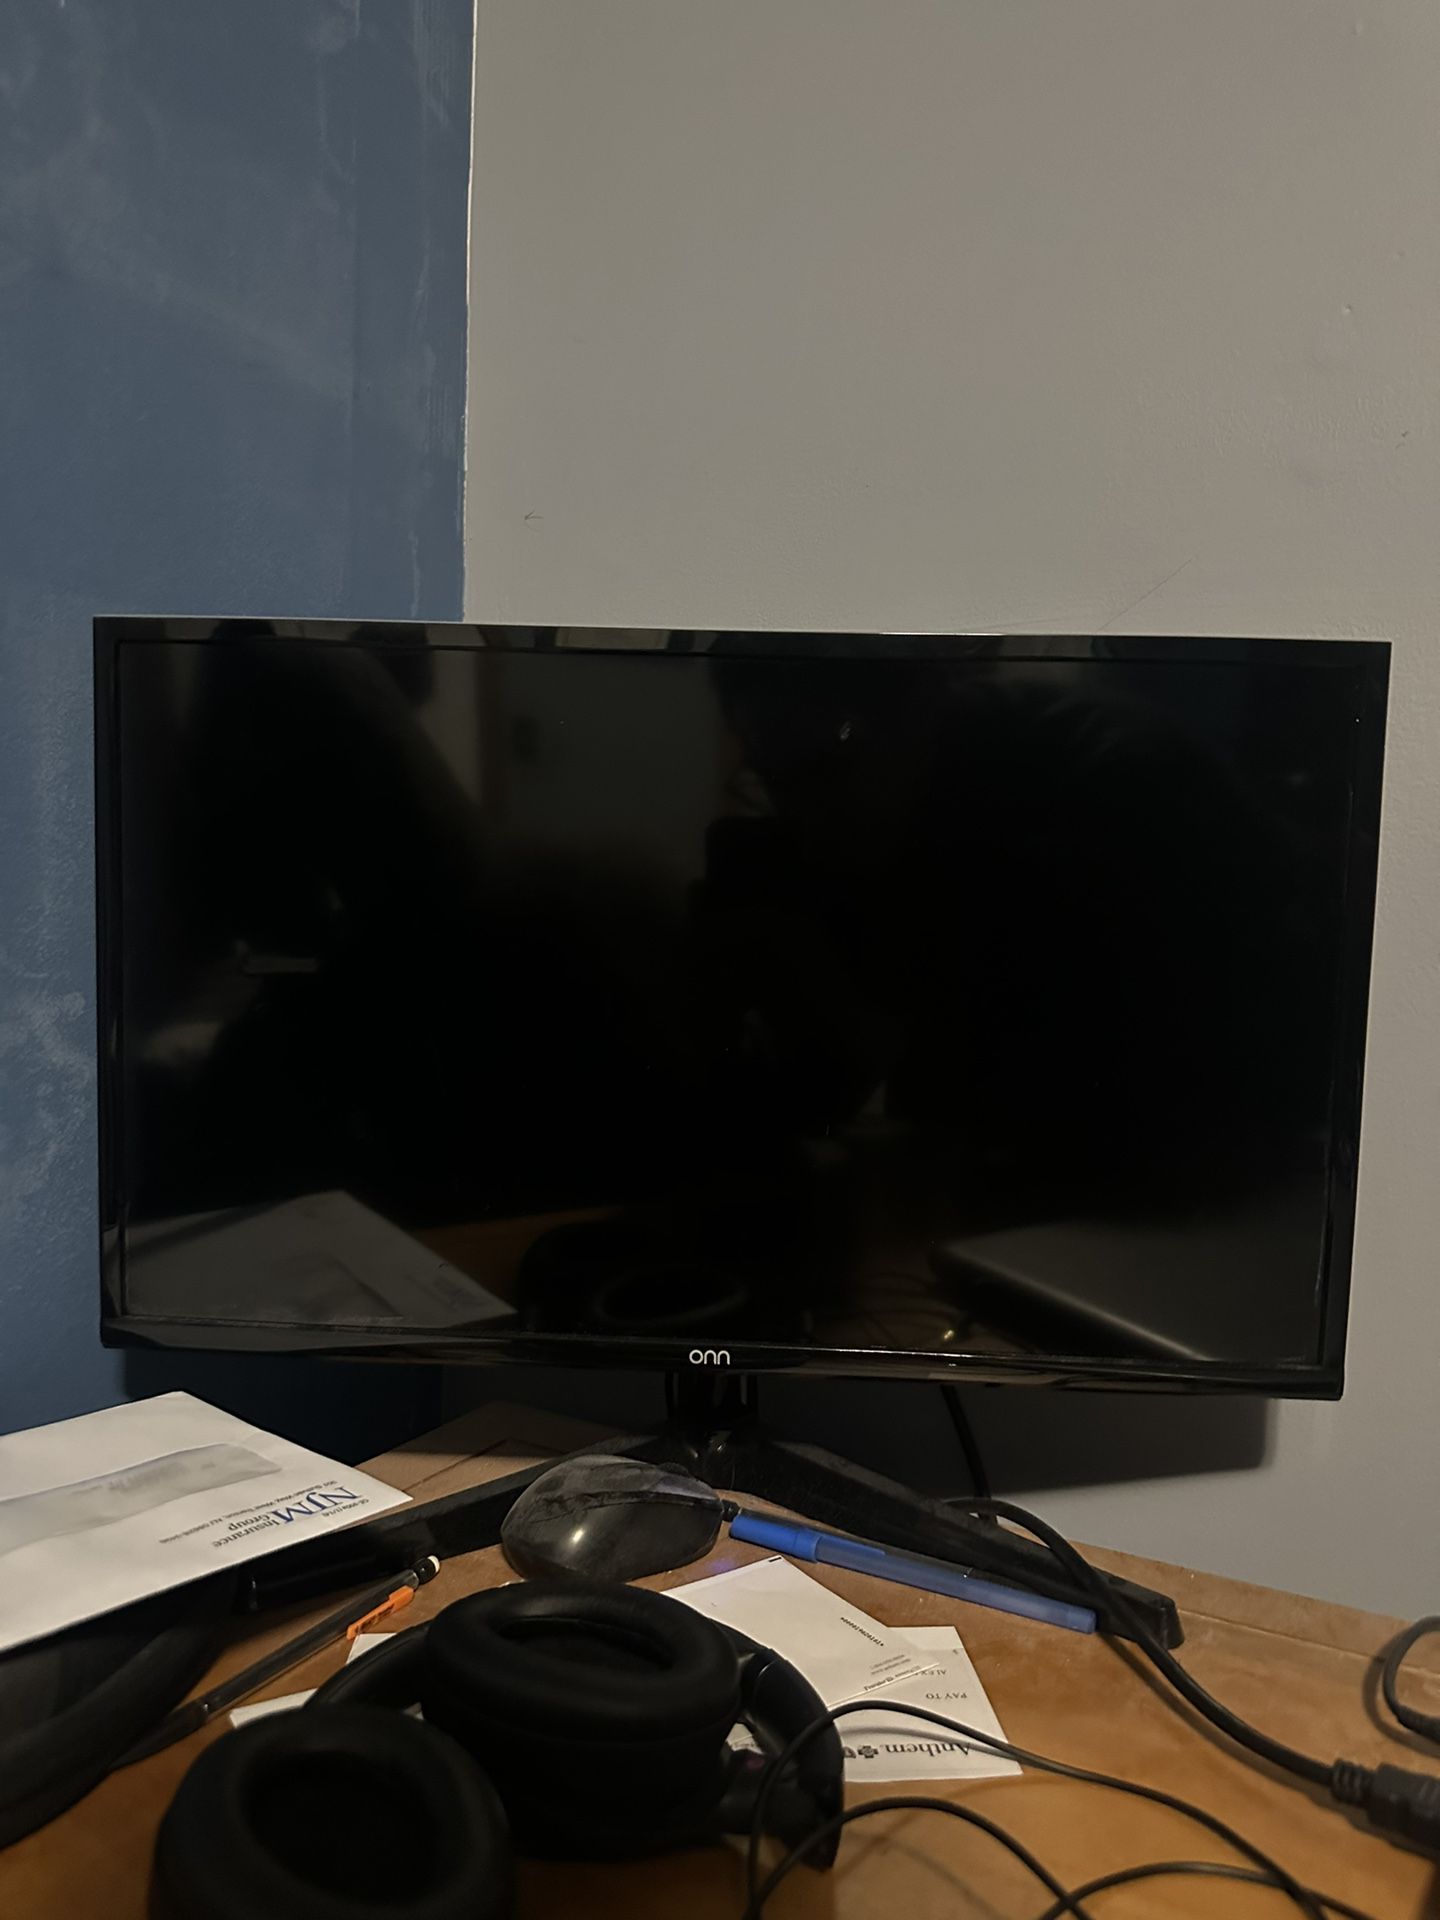 21.5” HD Computer monitor